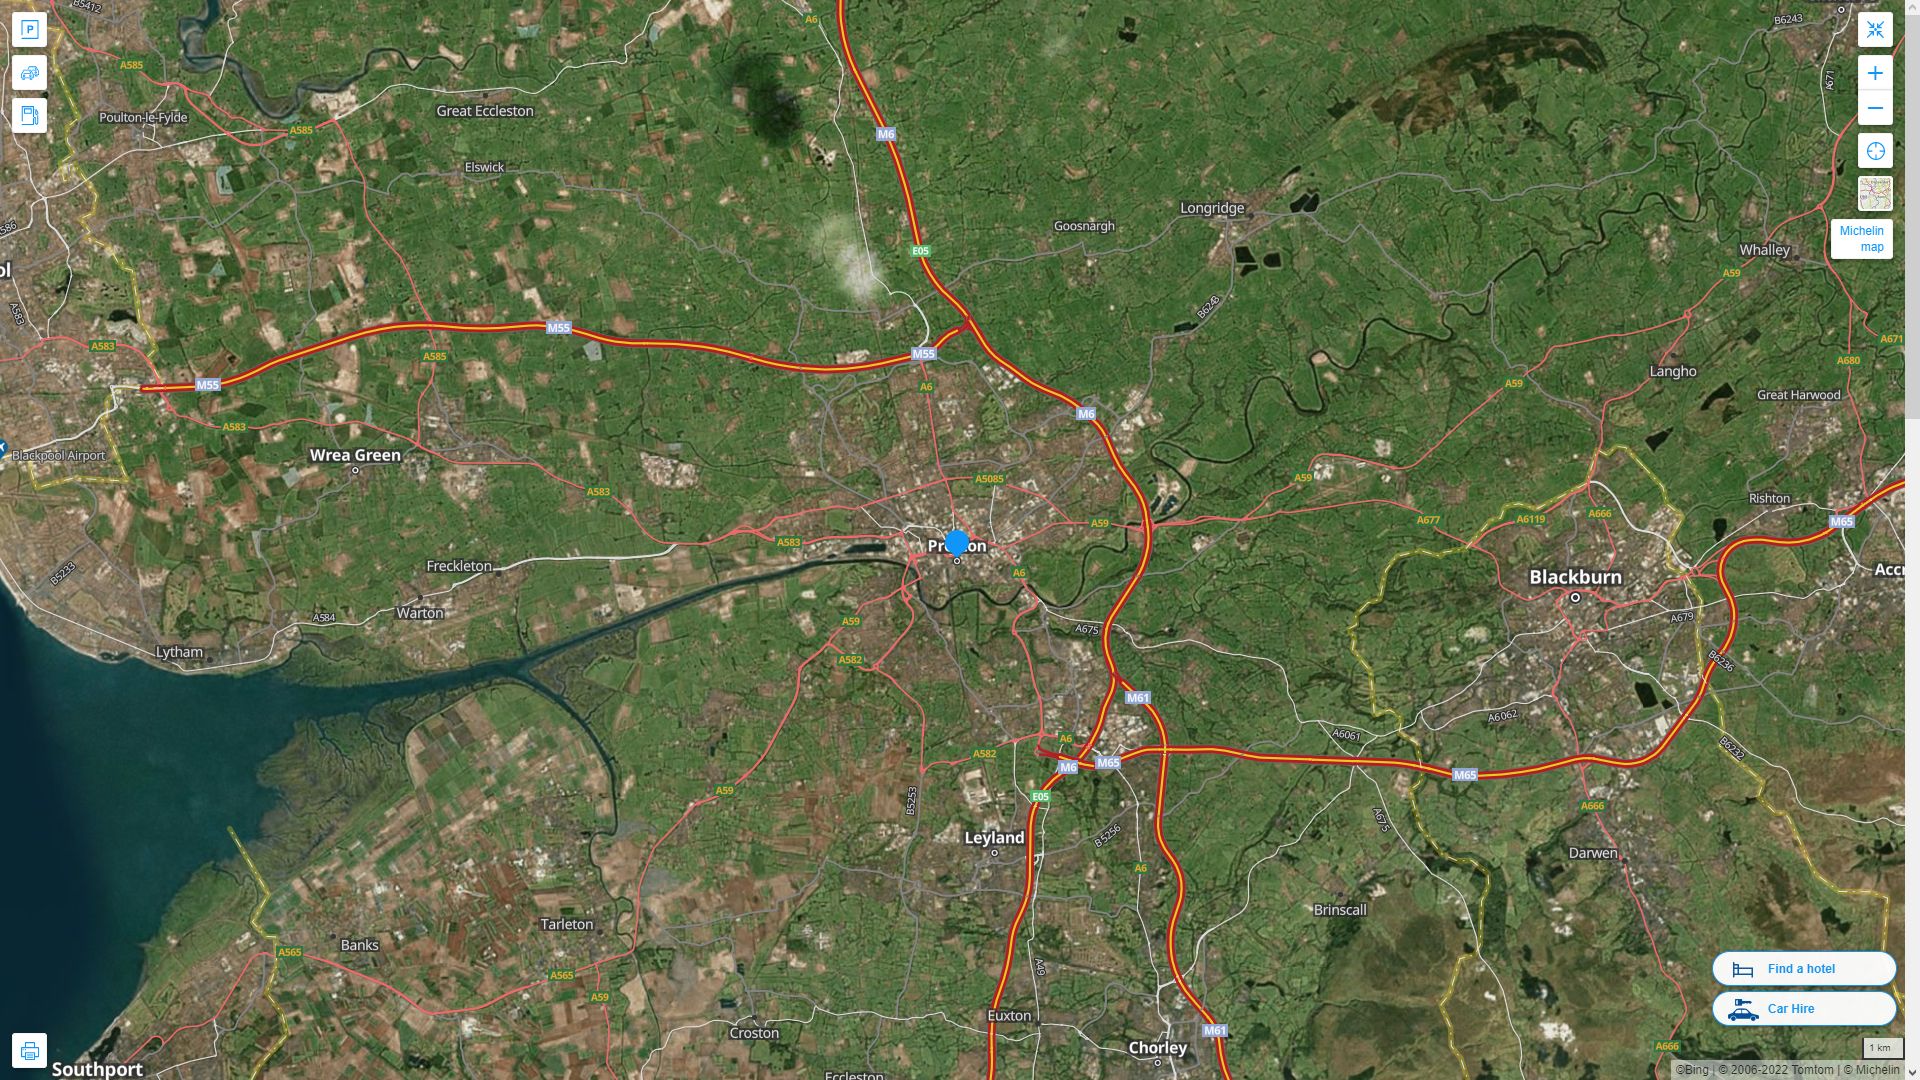 Preston Royaume Uni Autoroute et carte routiere avec vue satellite